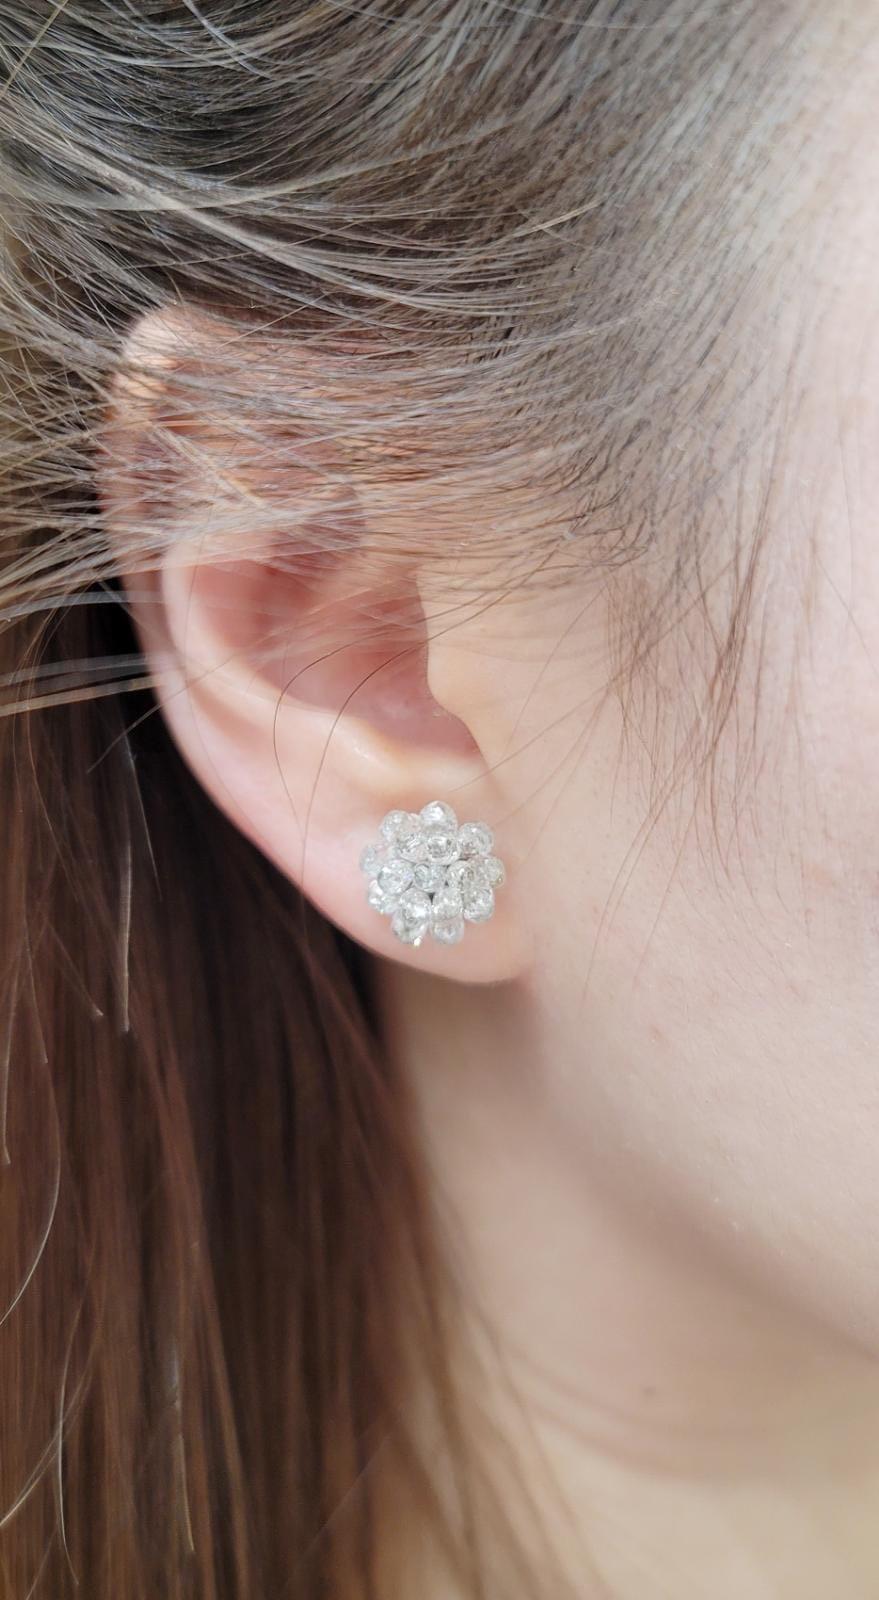 PANIM Boucles d'oreilles en or blanc 18k avec briolette en diamant

Les boucles d'oreilles classiques PANIM sont constituées de briolettes en diamant serties de manière experte dans de l'or blanc 18 carats. Elles éblouissent la lumière sous tous les